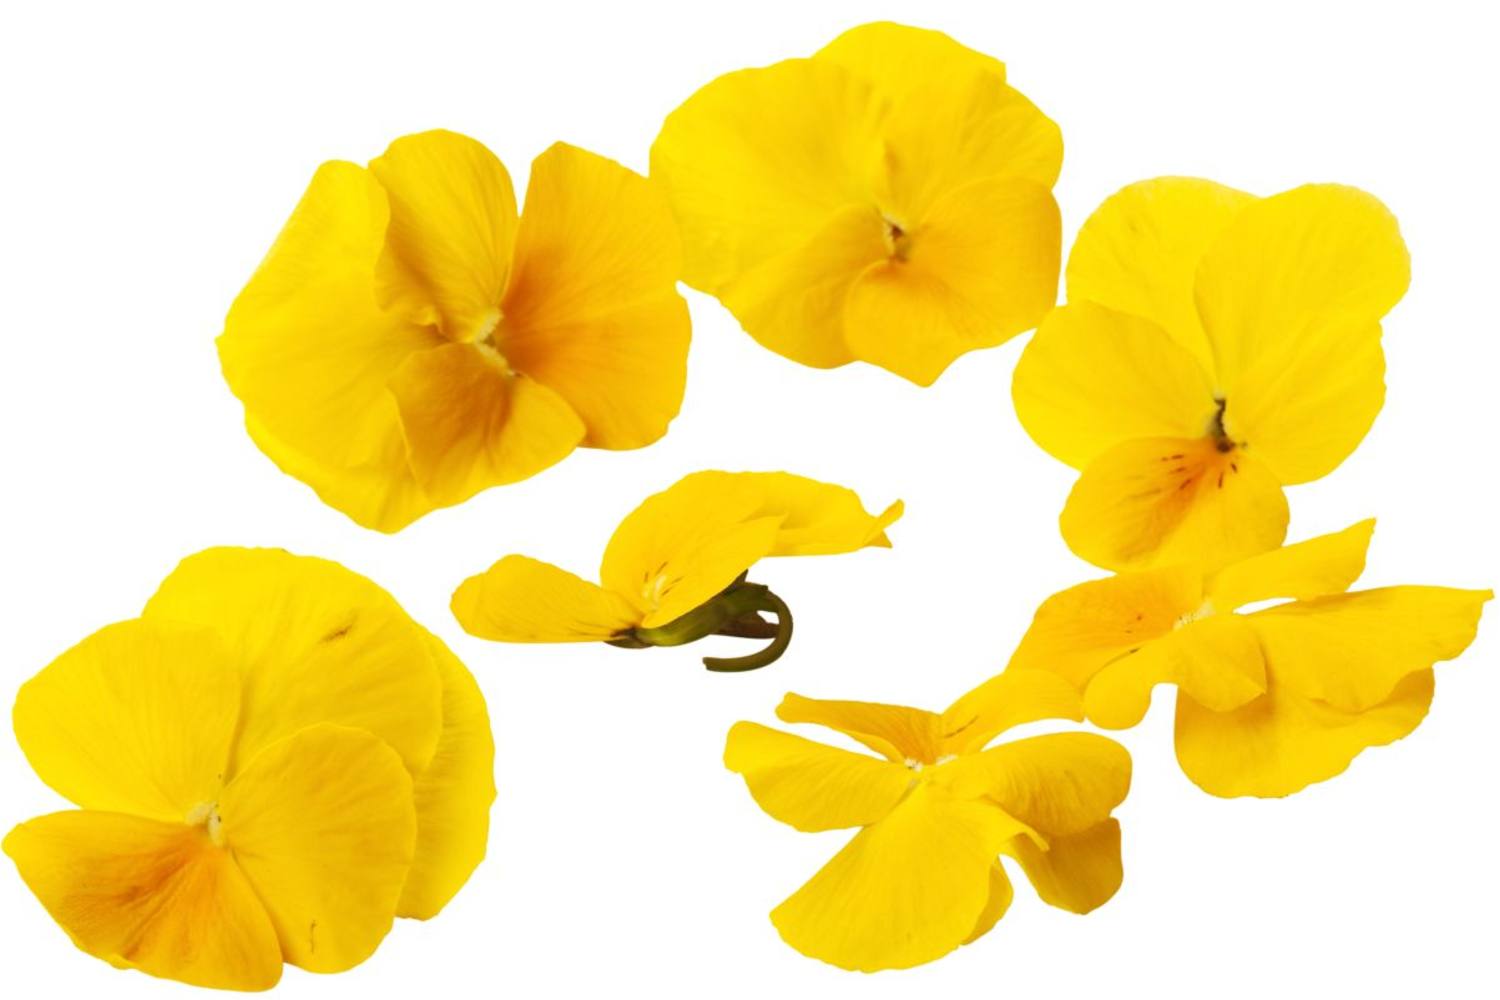 Eetbare bloem gele viooltjes 20-25st kist 18 stuks 1